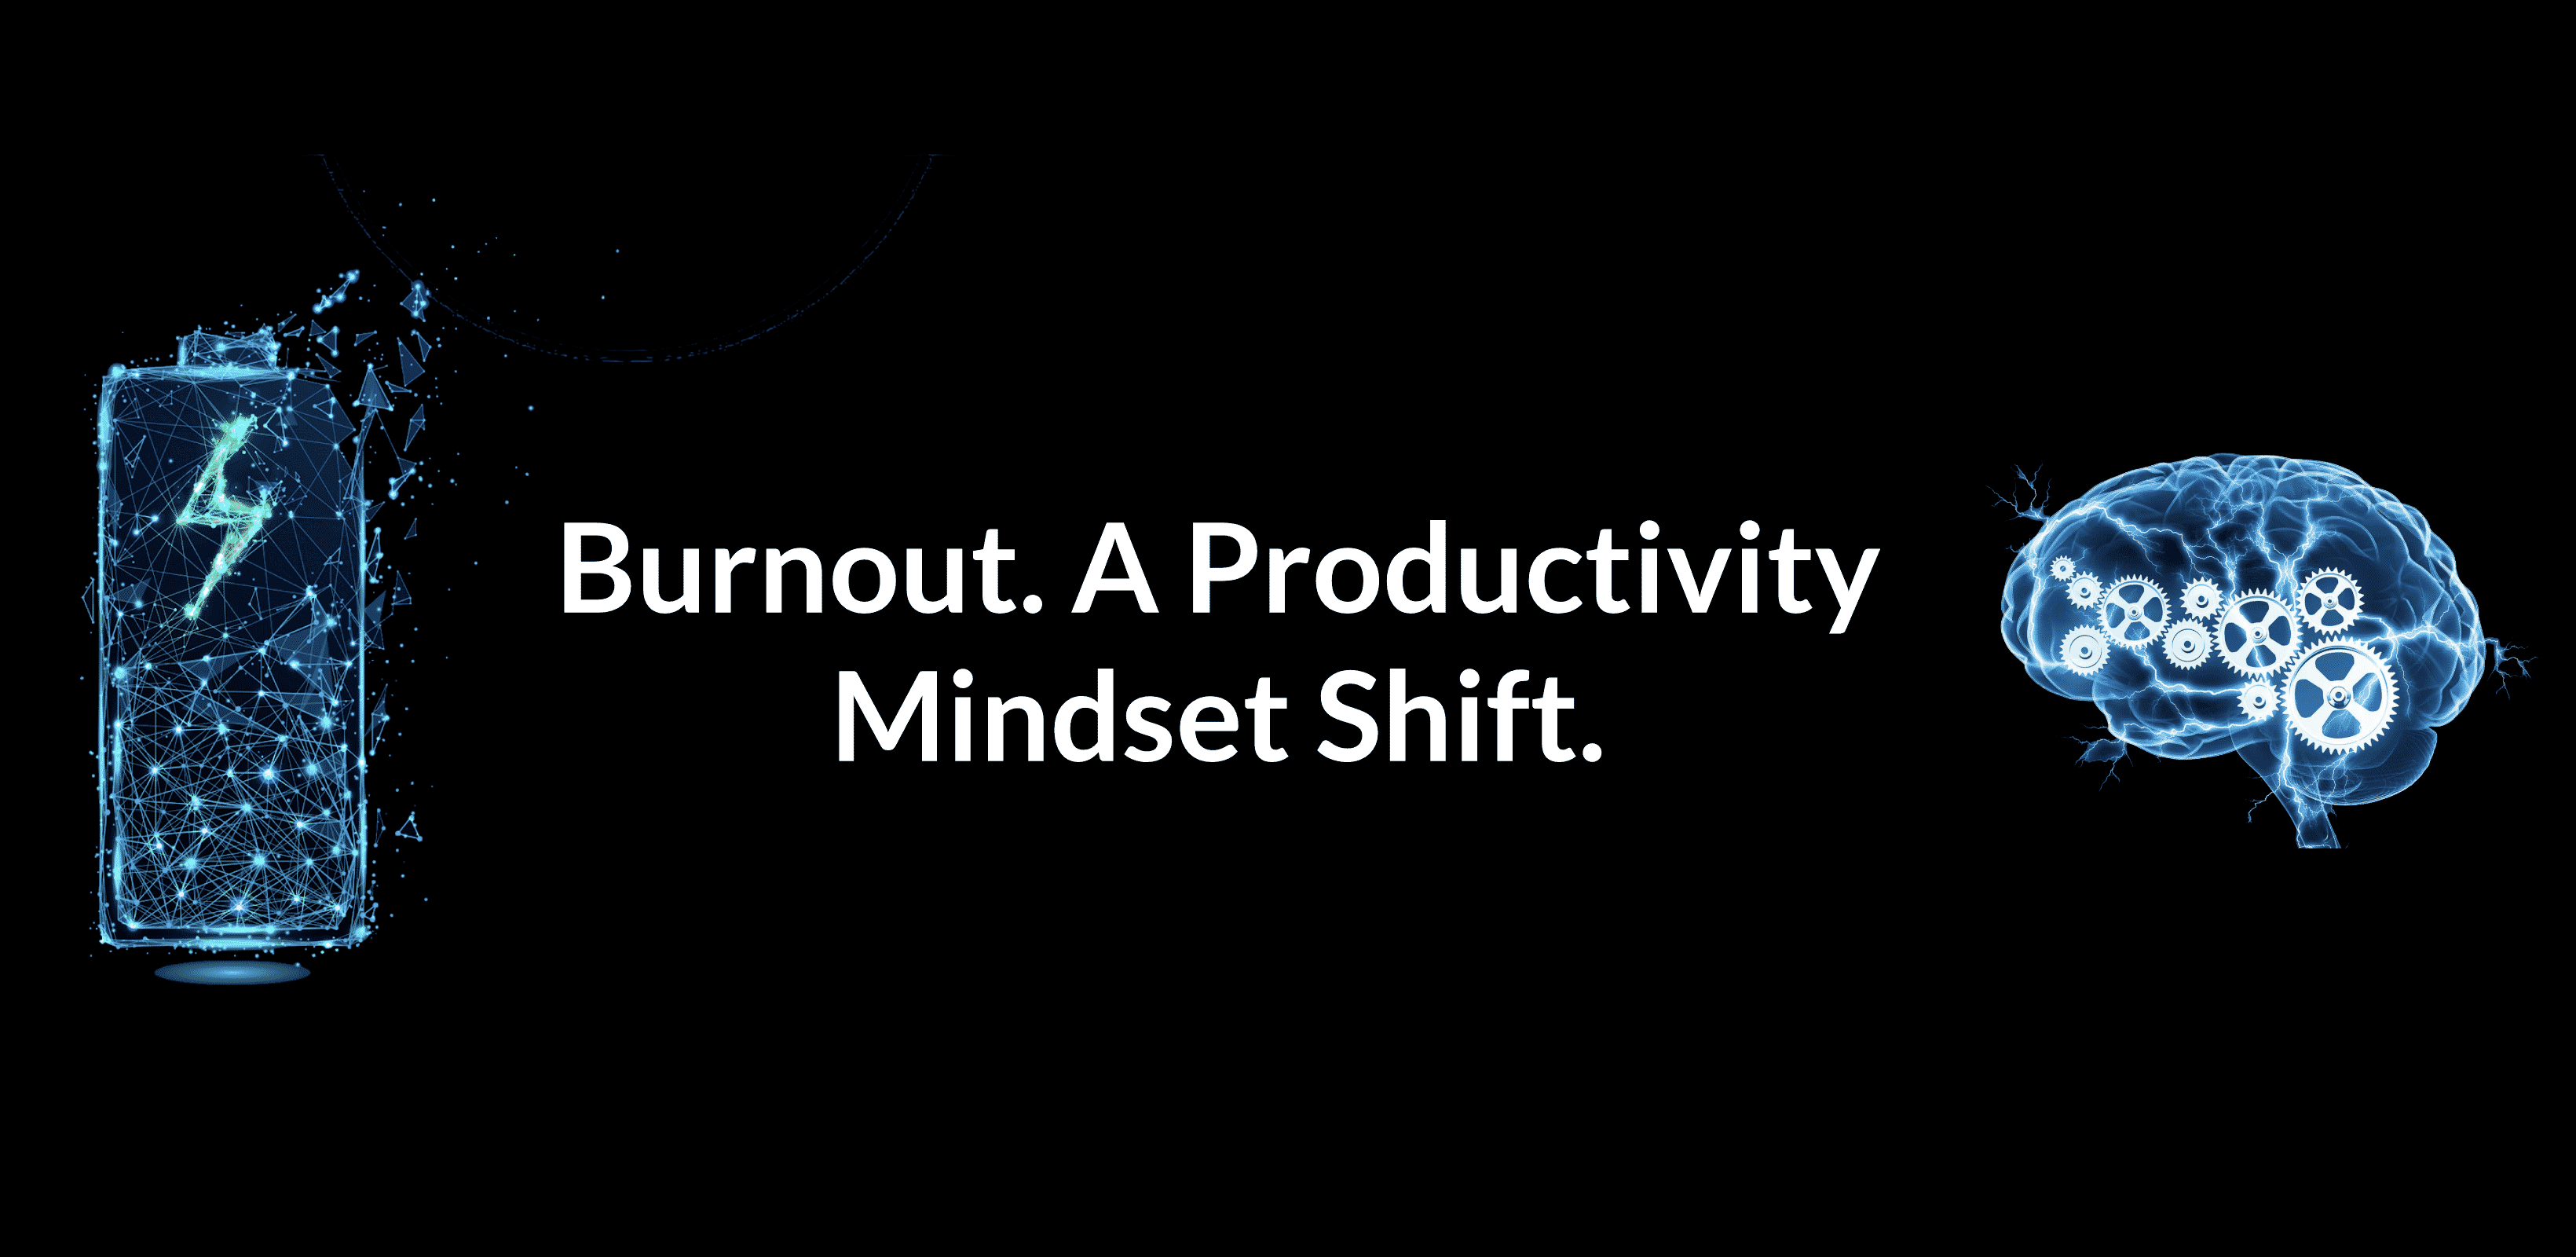 Productivity_Mindset_1_77daa223be